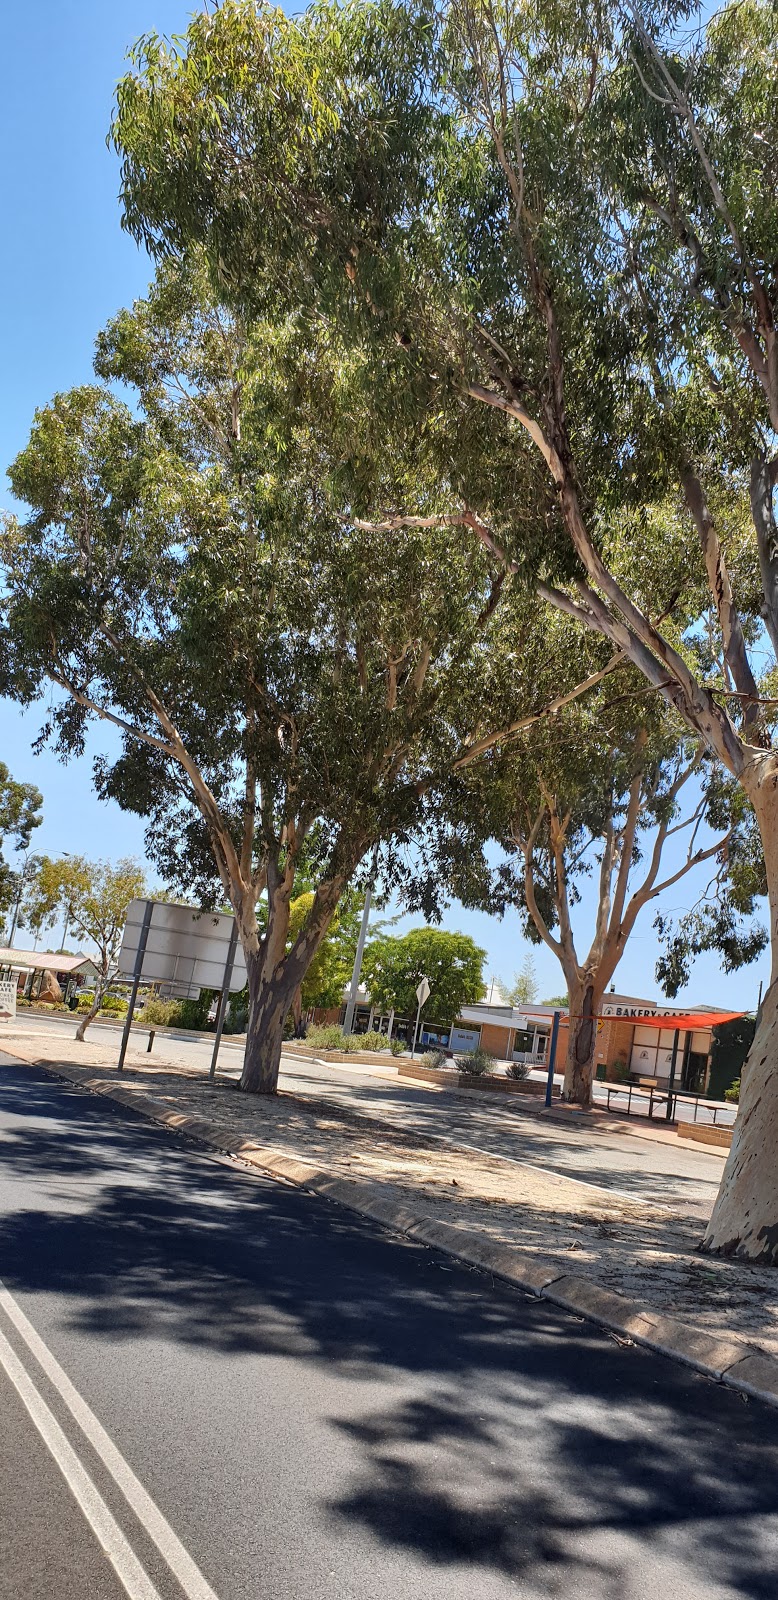 Wongan Hills Community Resource Centre | The Station, 1 Wongan Rd, Wongan Hills WA 6603, Australia | Phone: (08) 9671 1691